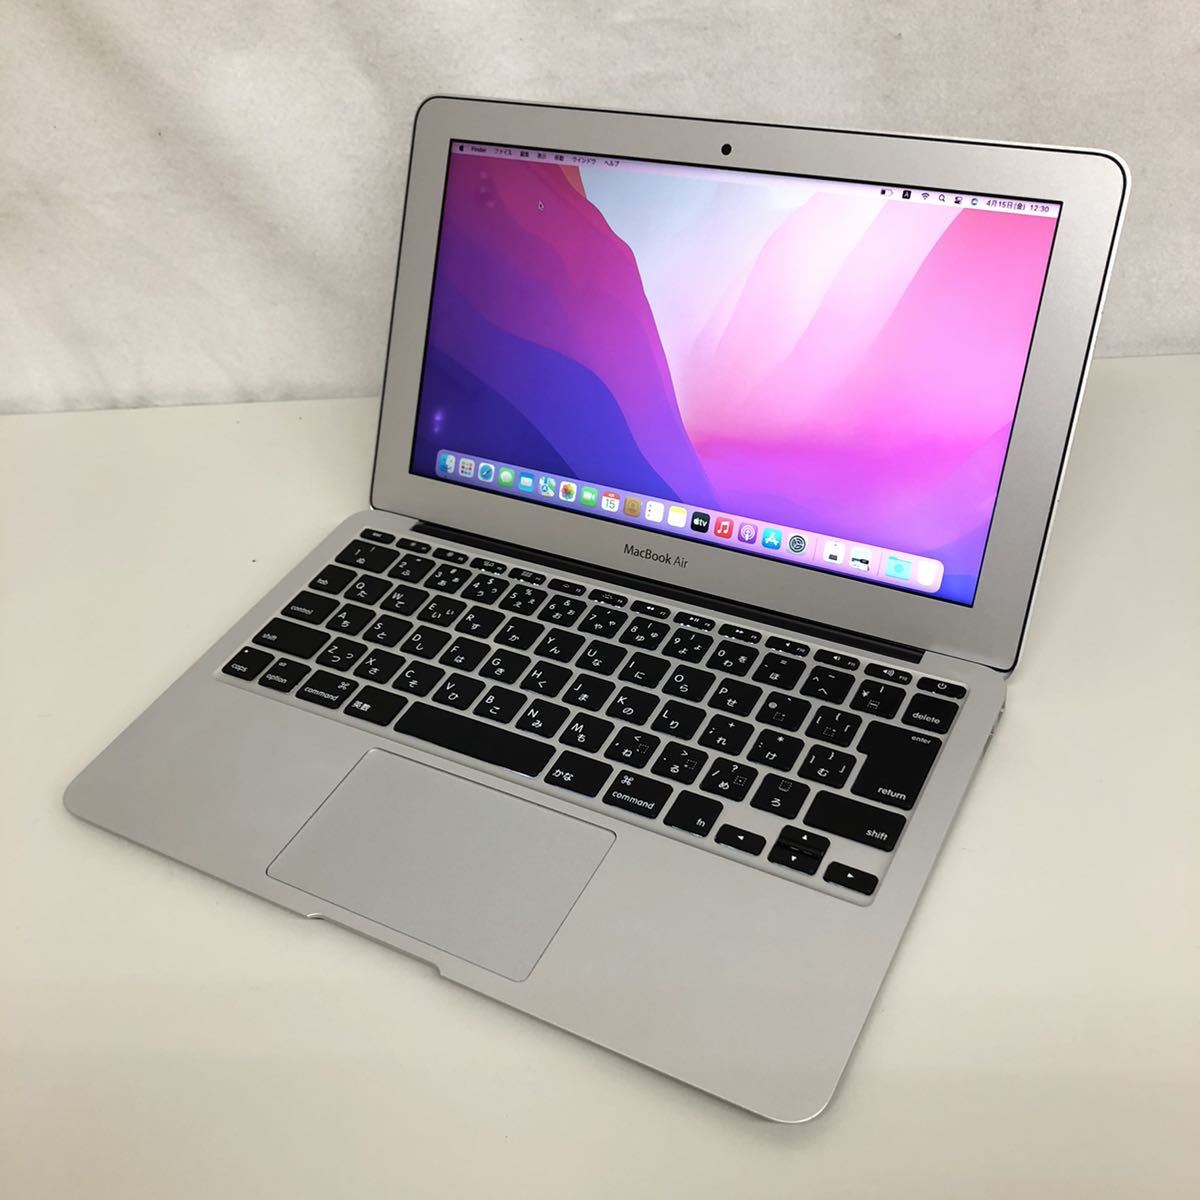 【ジャンク】Apple MacBook Air 11インチ Early 2015 MJVM2J/A Monterey/Core i5 1.6GHz/4GB/128GB/A1465 整備品_画像2